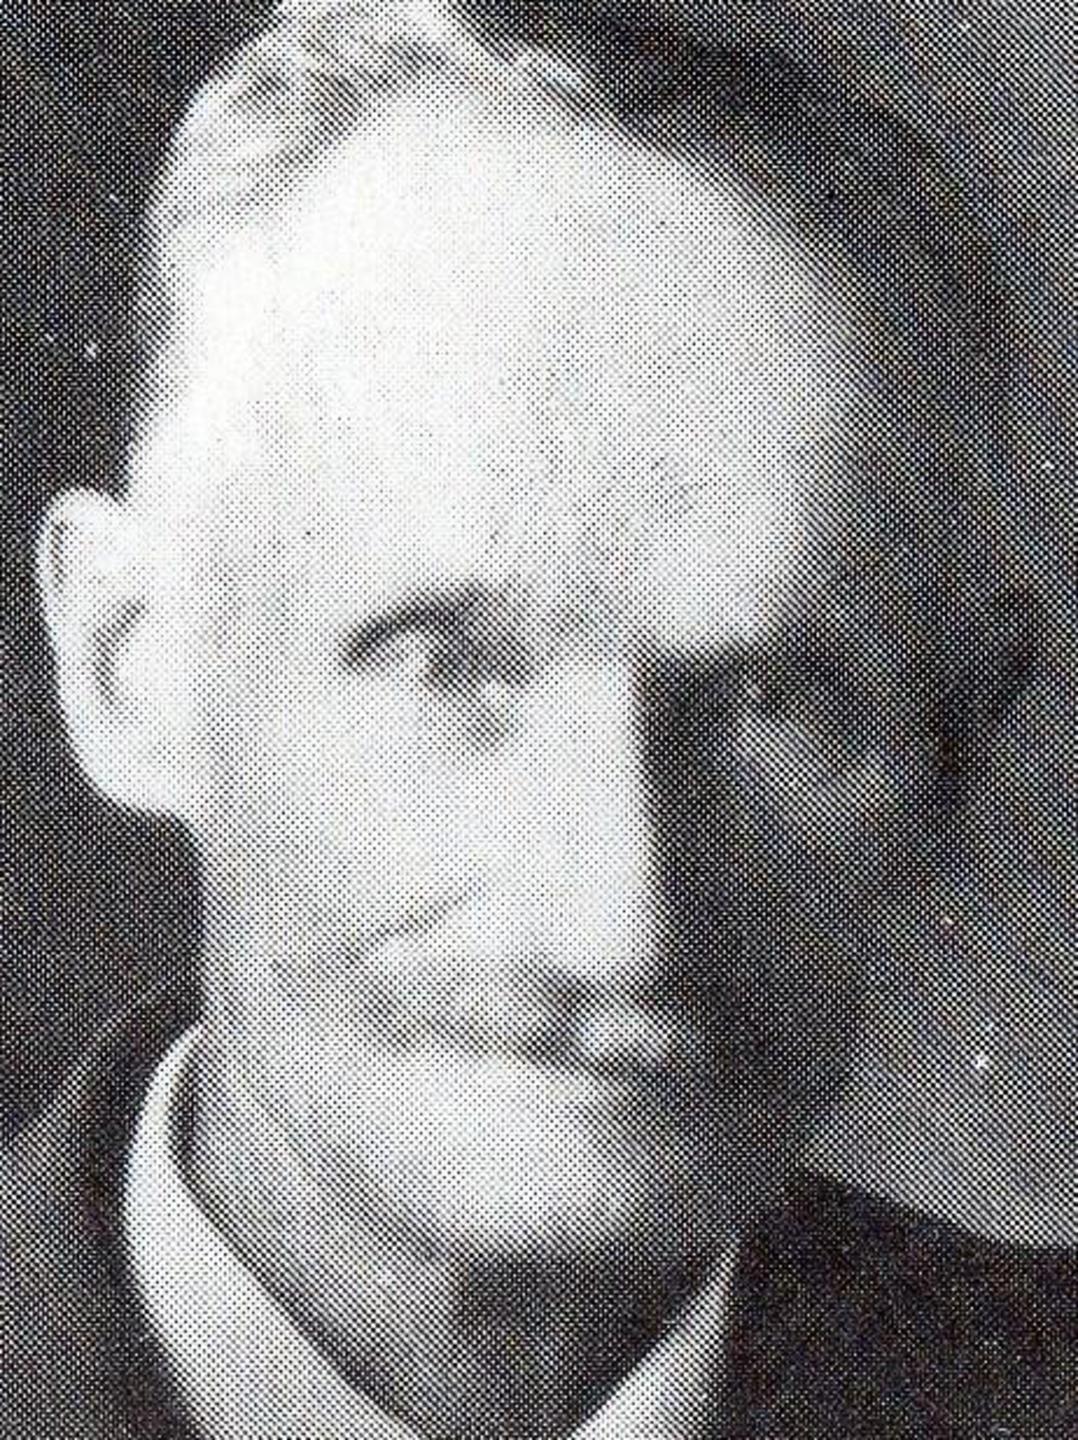 Nicholas Smith (1854 - 1936)